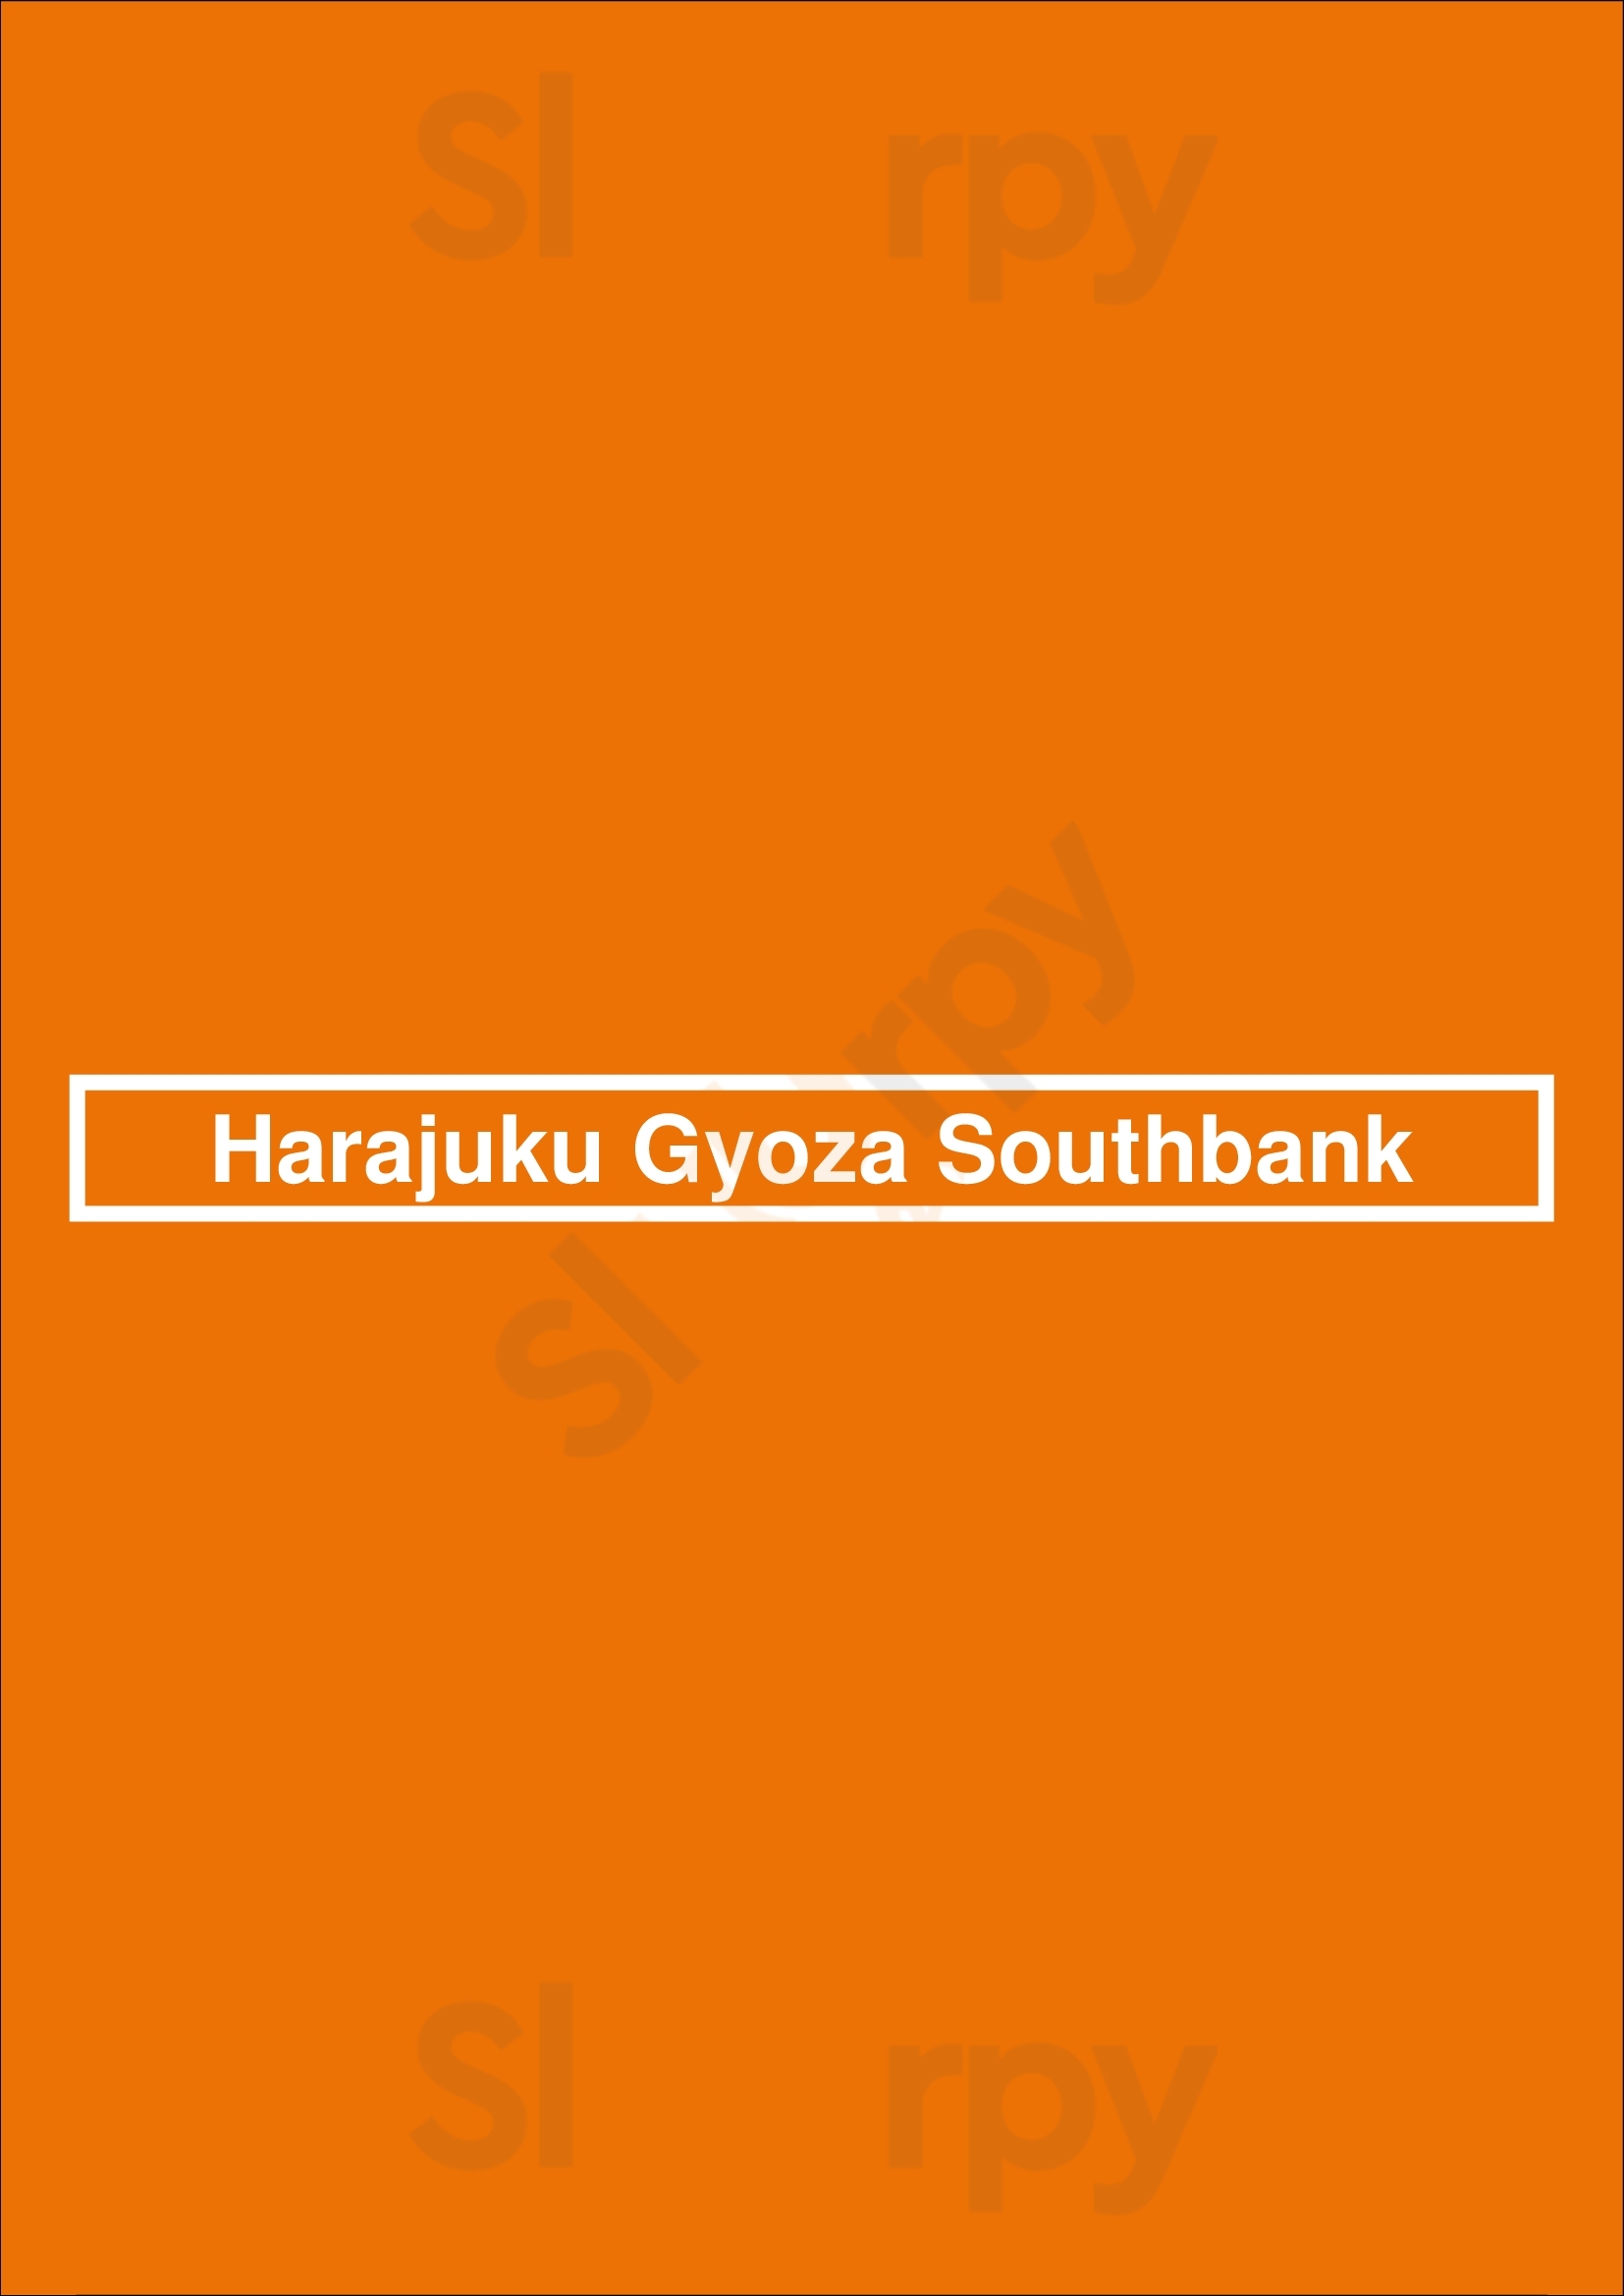 Harajuku Gyoza South Bank Brisbane Menu - 1